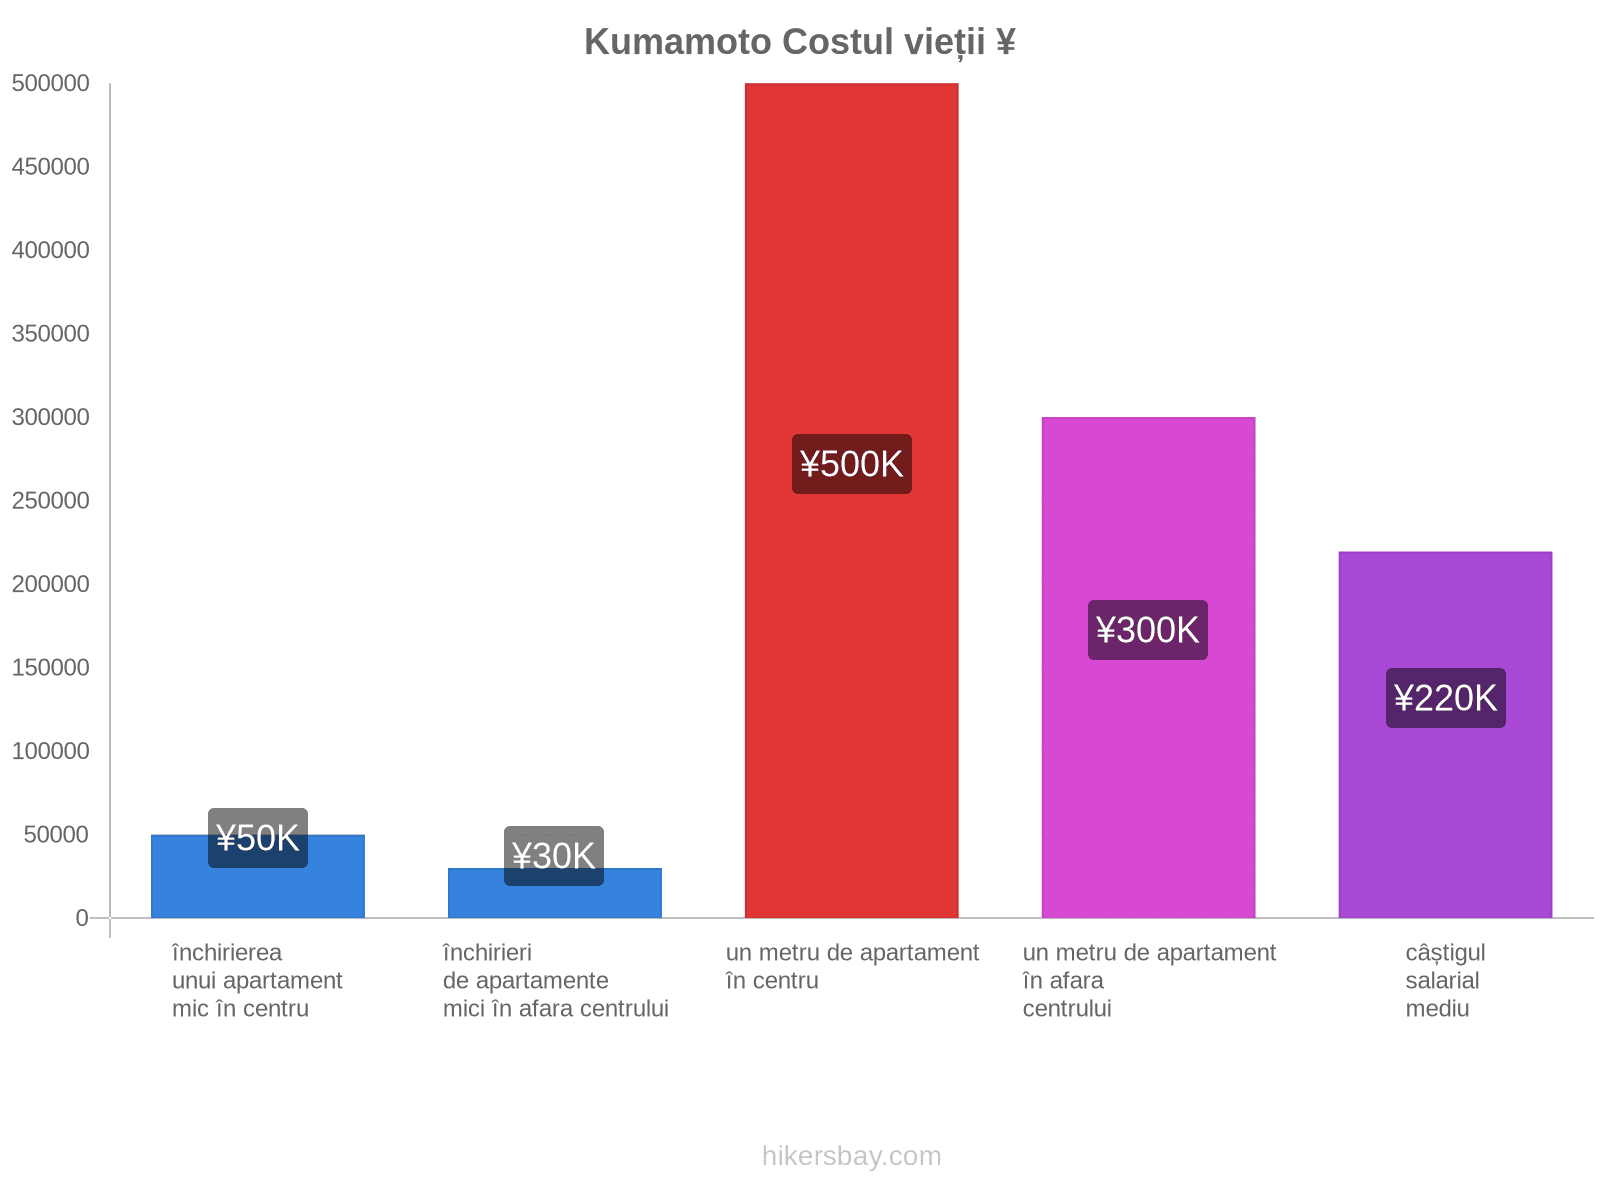 Kumamoto costul vieții hikersbay.com